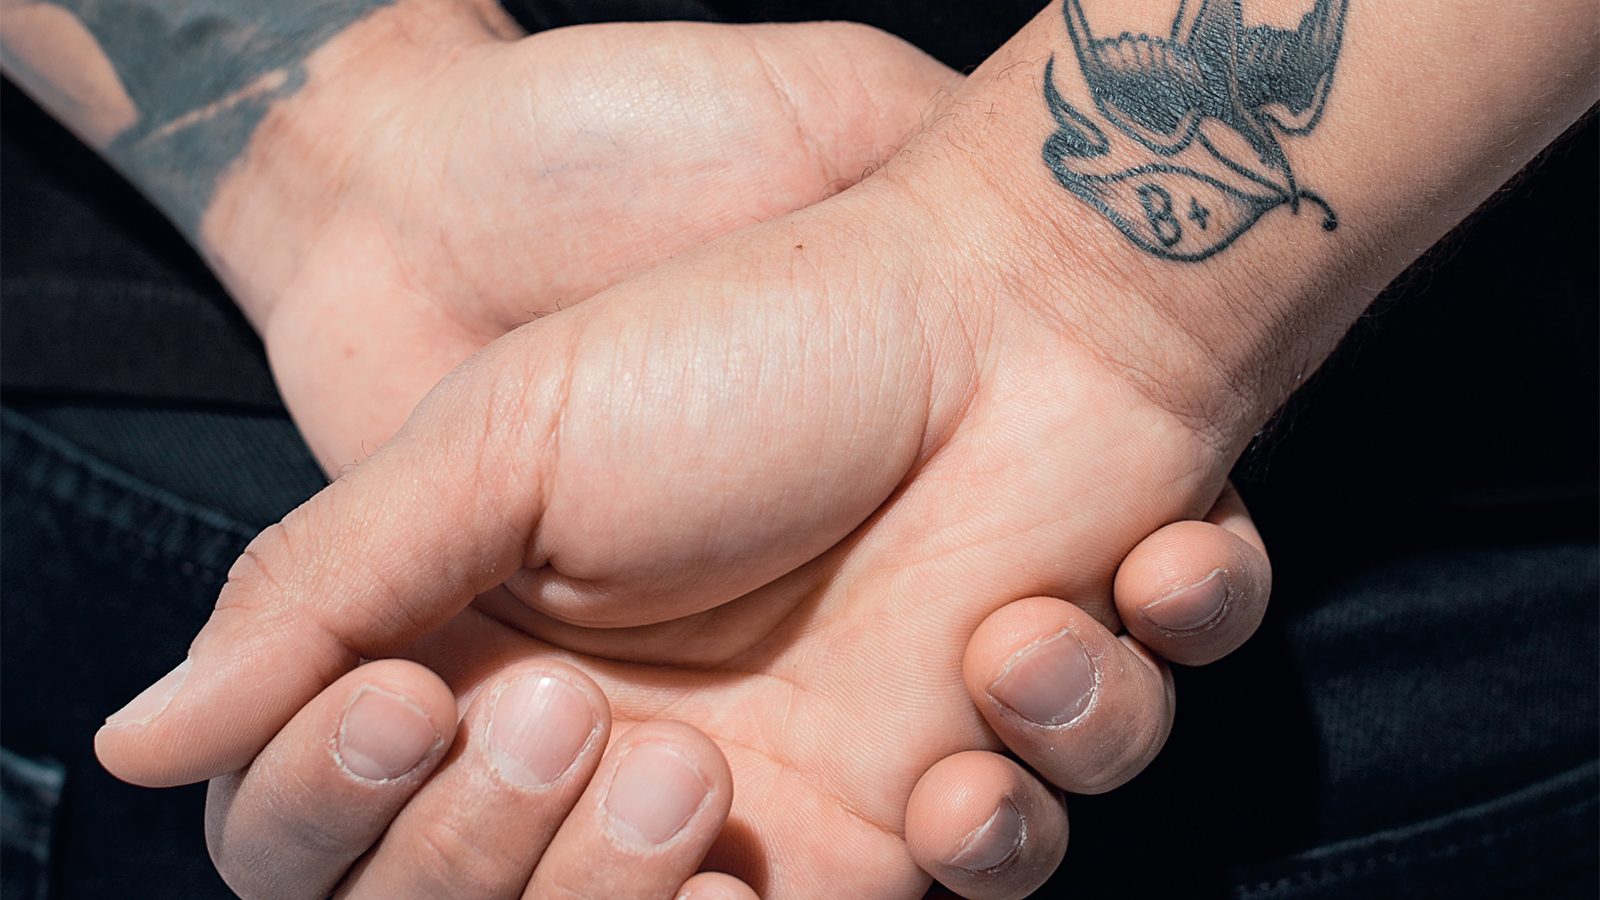 Kuukauden parhaassa mainoksessa hyvän tekeminen on tatuoitu iholle – "Veriryhmä kertoo ihmisten ainutlaatuisuudesta"